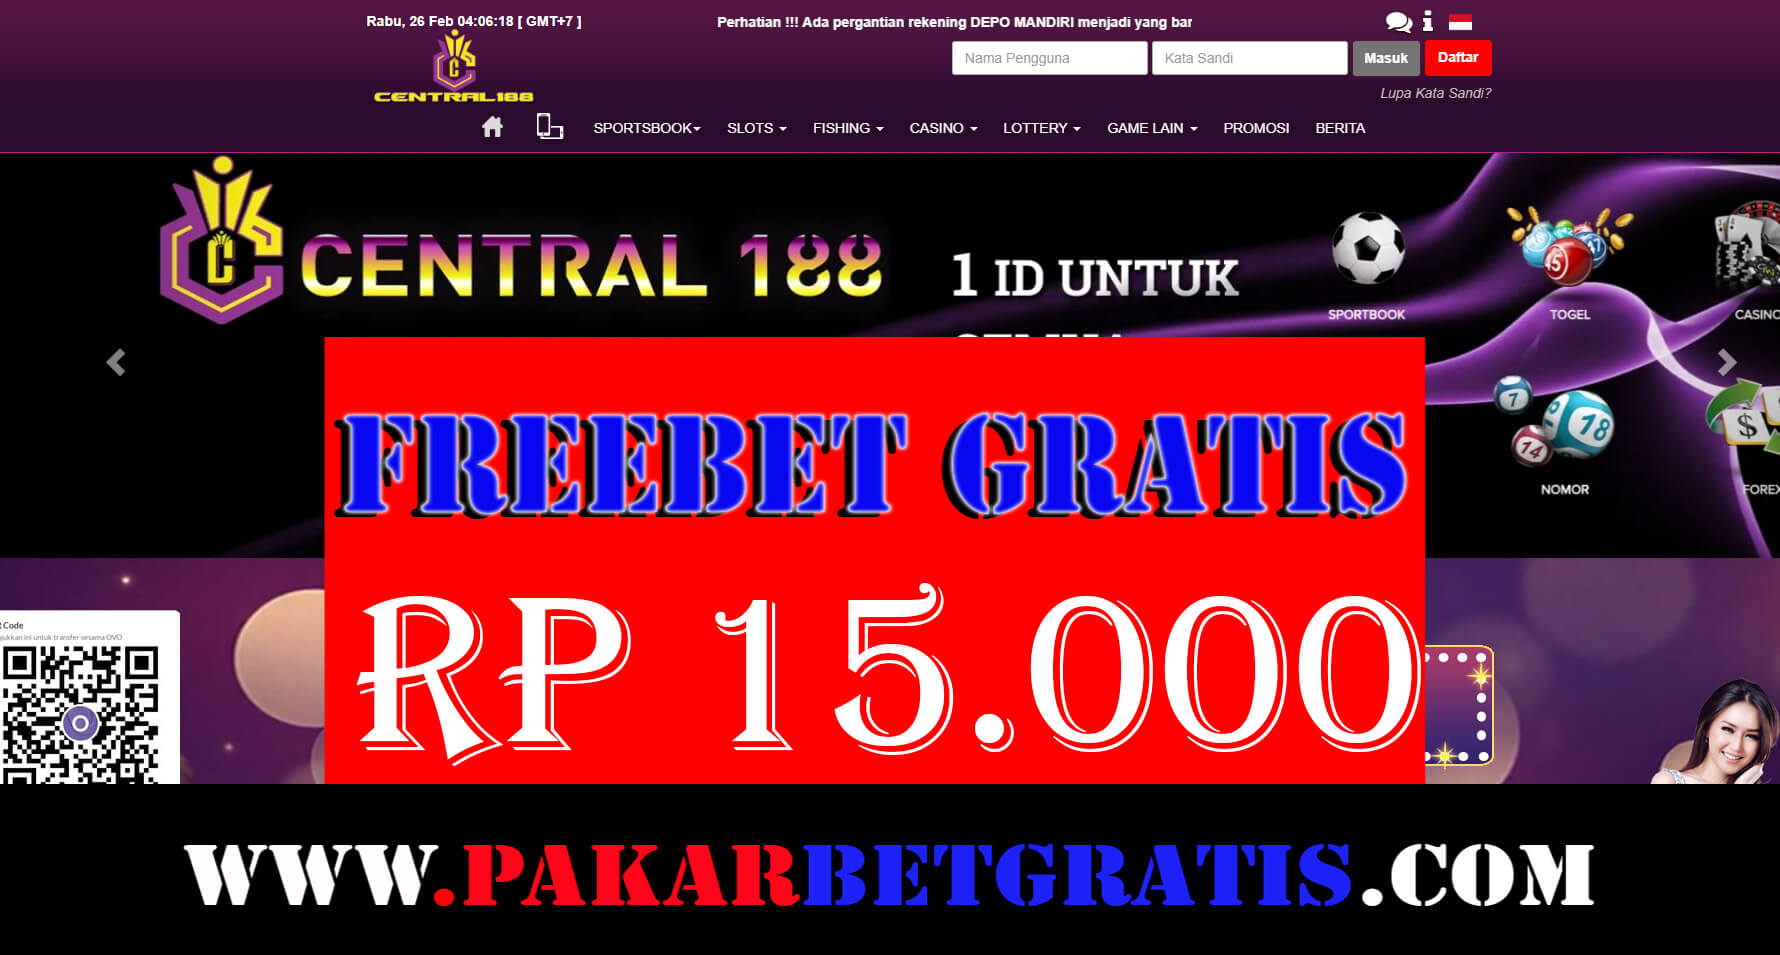 Freebet Gratis central188 Rp 15.000 Tanpa deposit